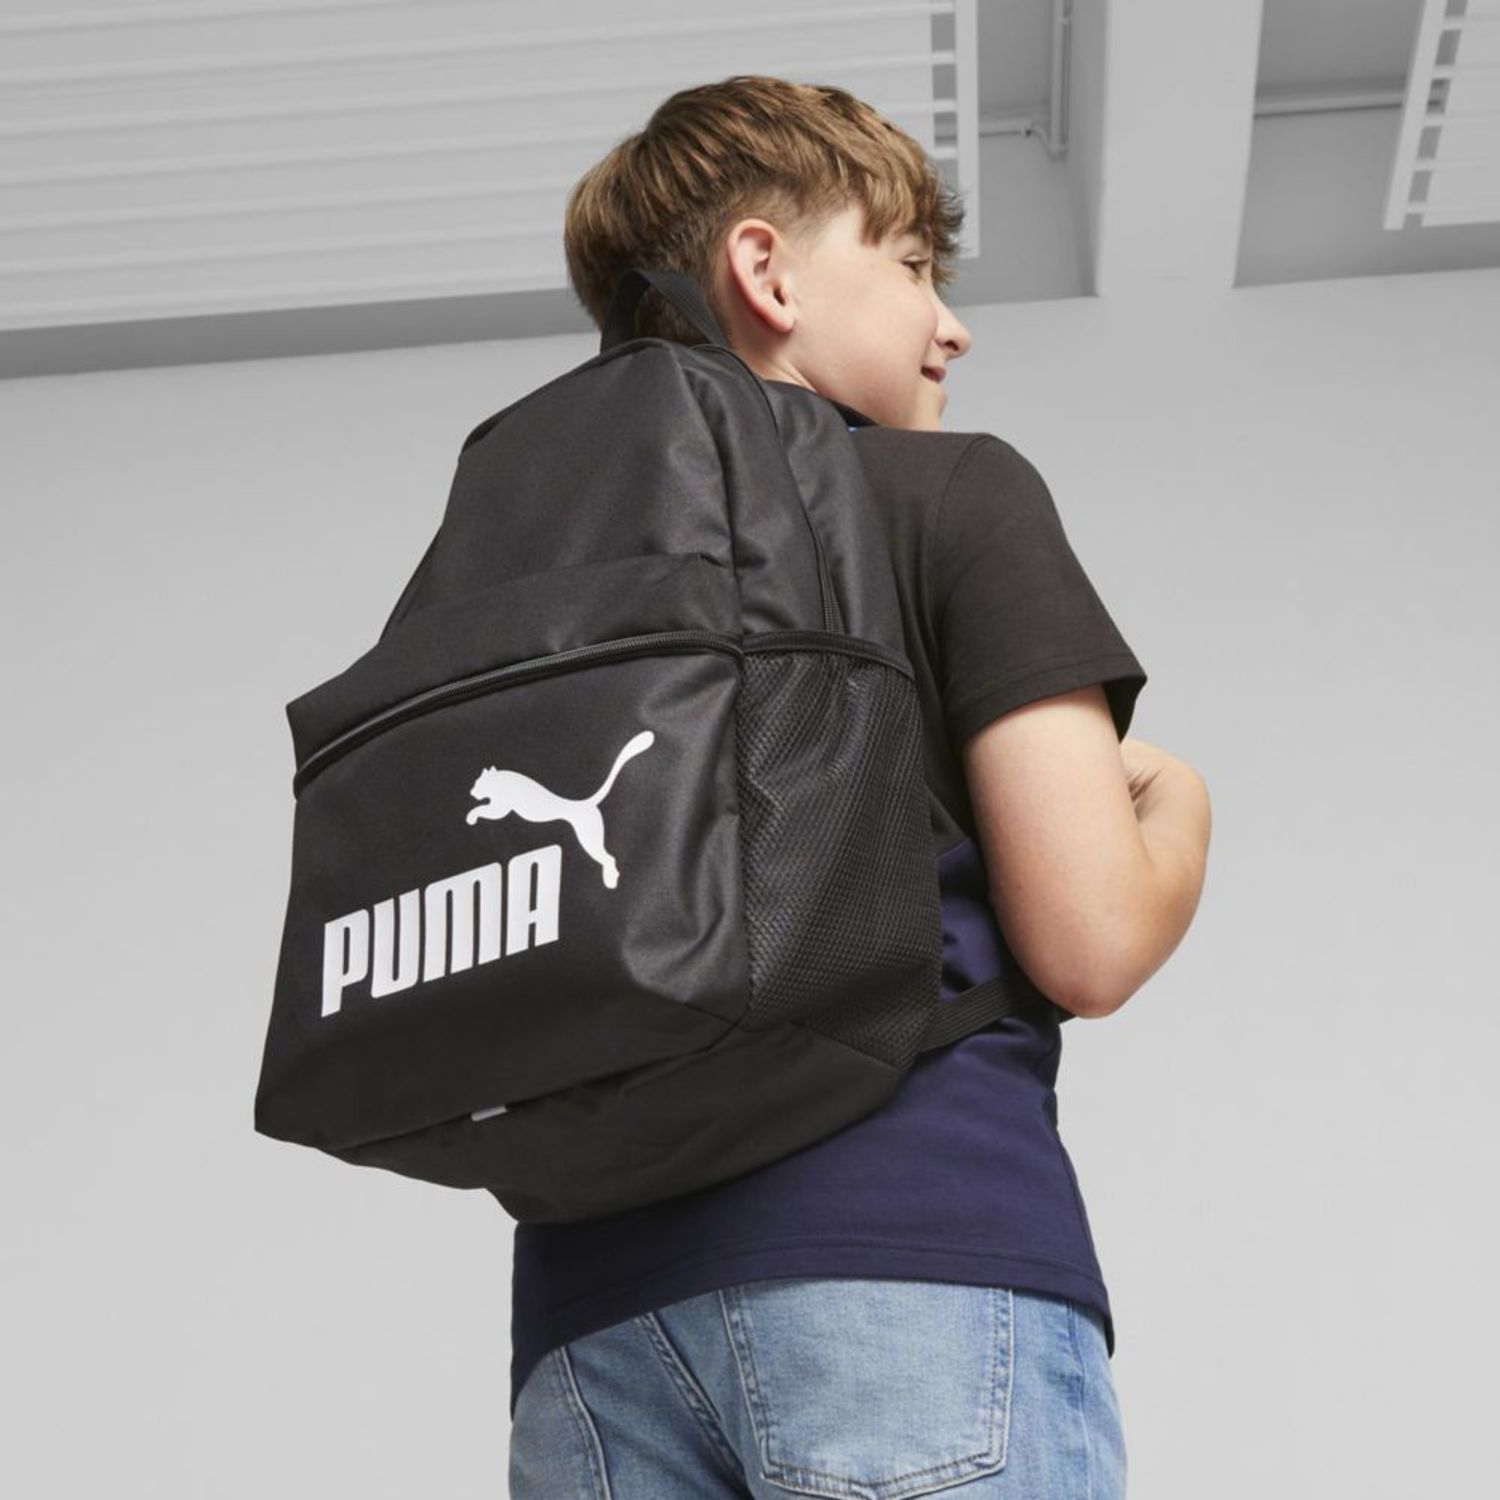 Puma Mochila Deportiva Adulto Unisex Phase Backpack negro